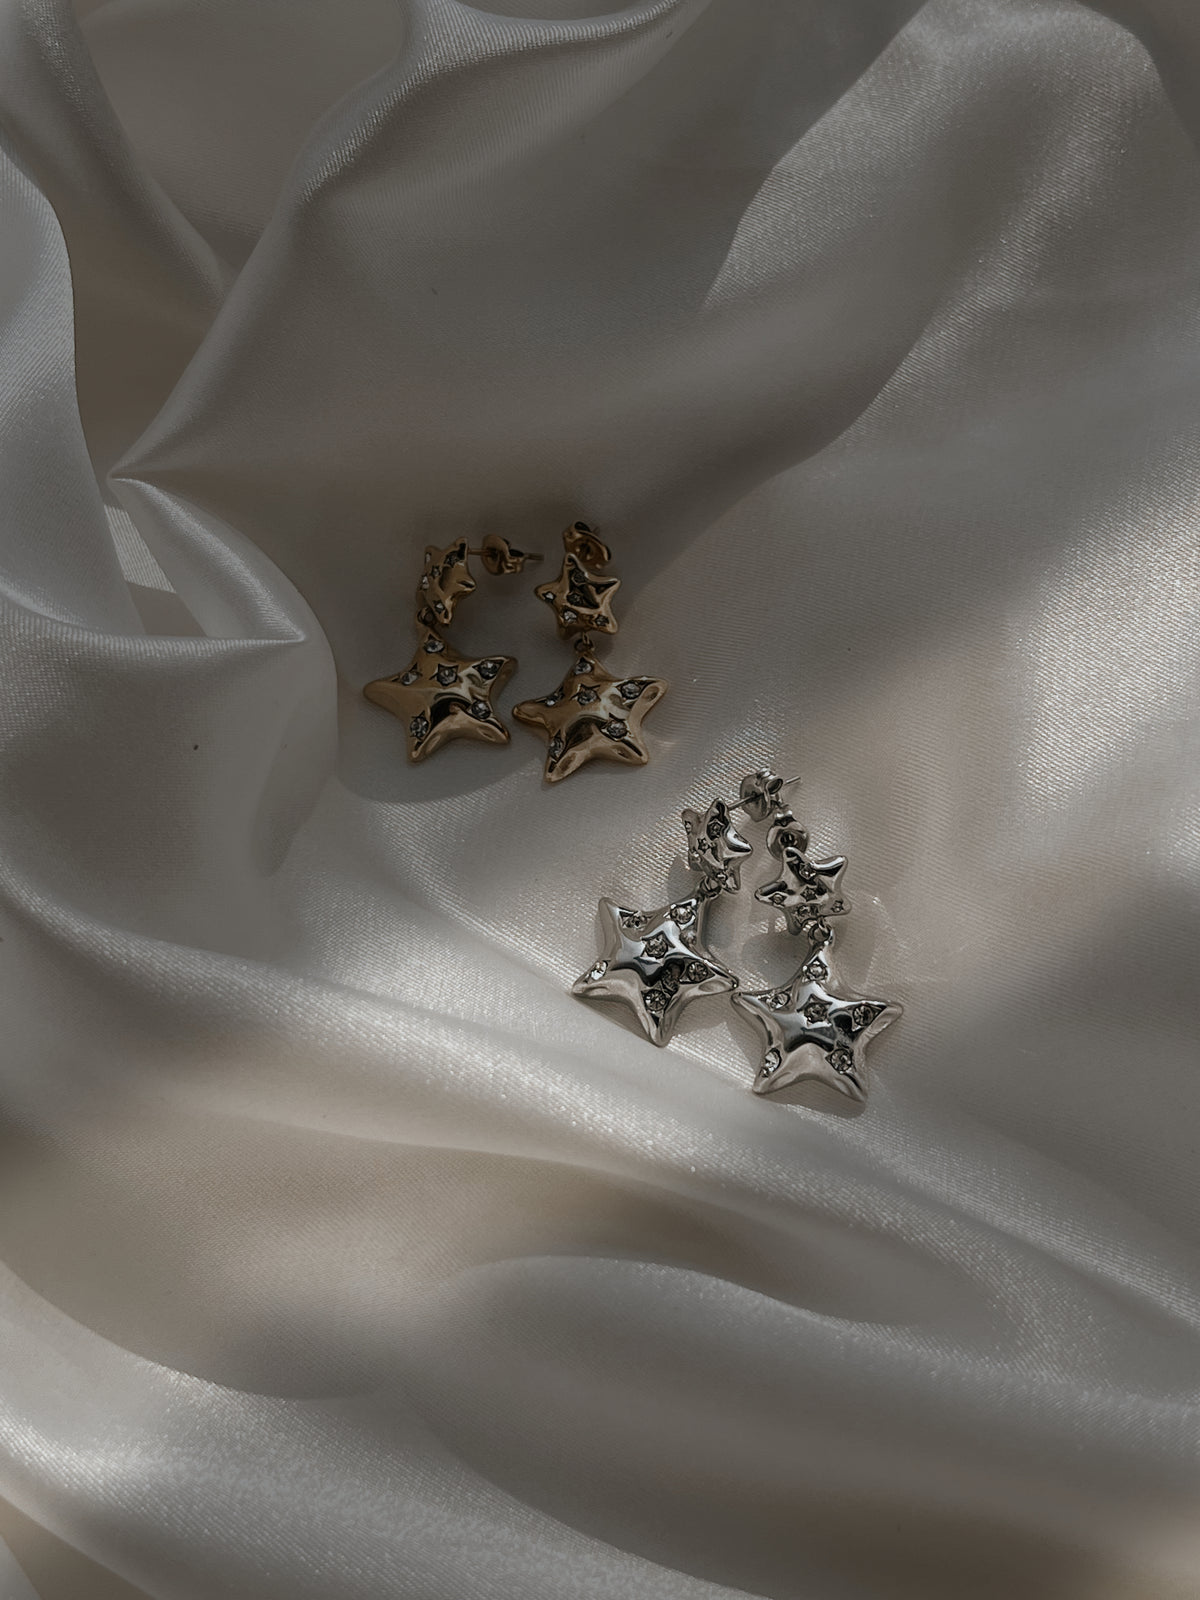 Starry earrings